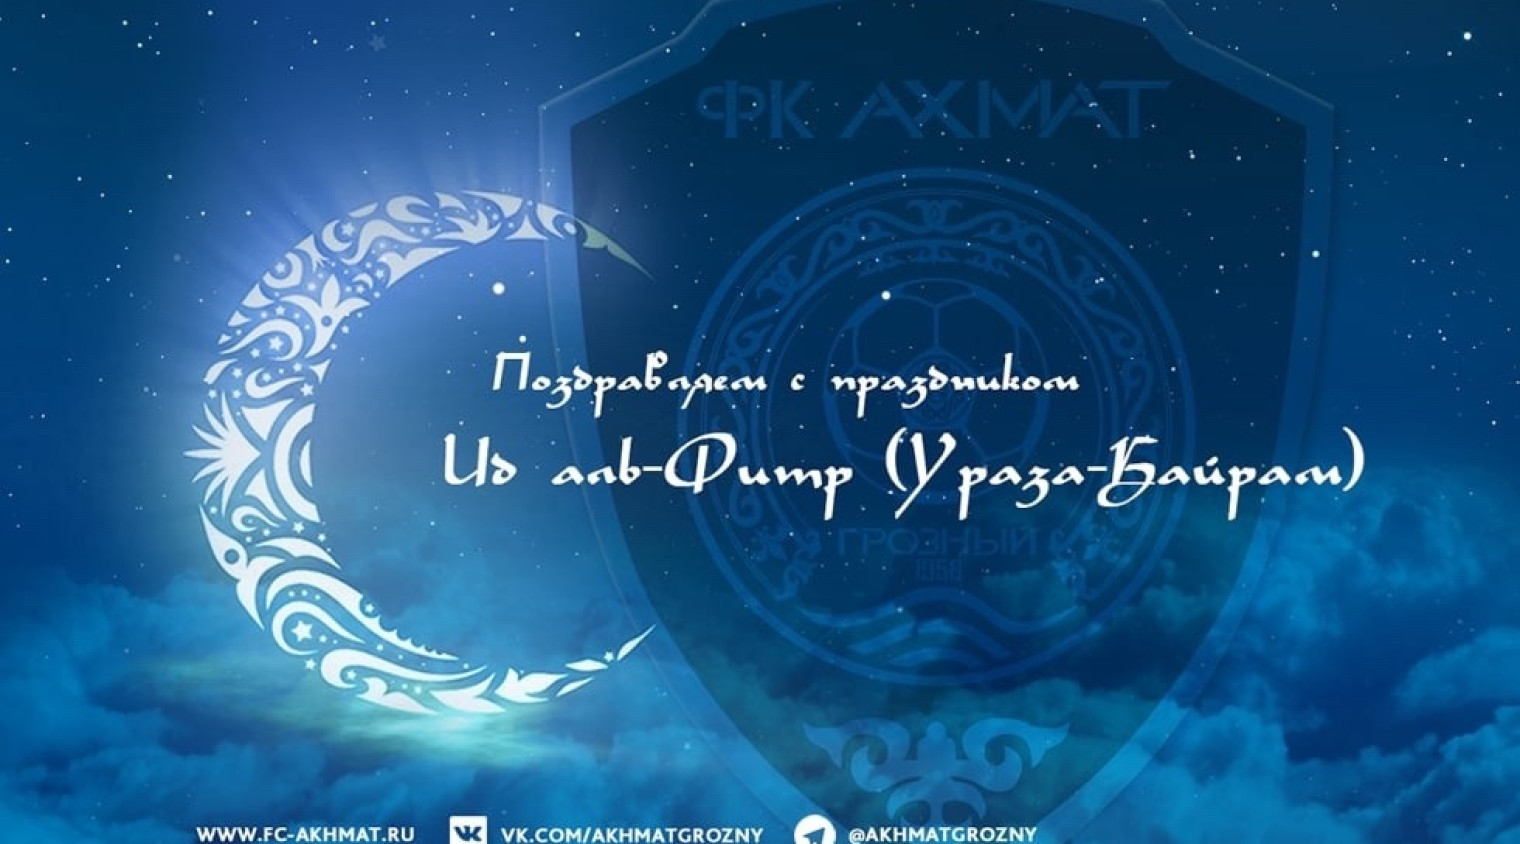 Поздравляем с наступлением праздника `Ид аль-Фитр (Ураза-Байрам)! 